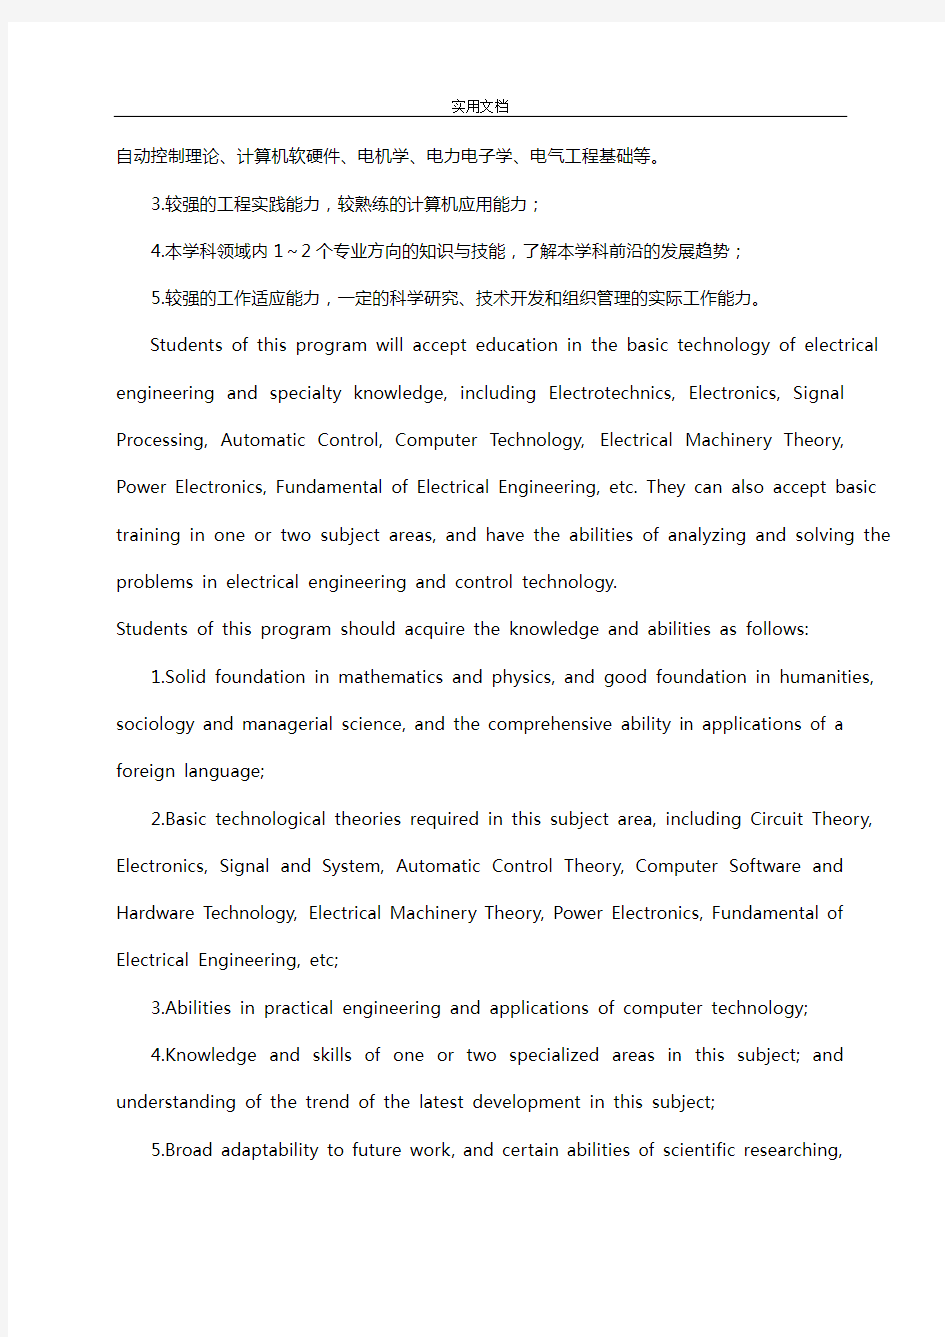 华中科技大学电气工程及其自动化专业本科培养计划清单